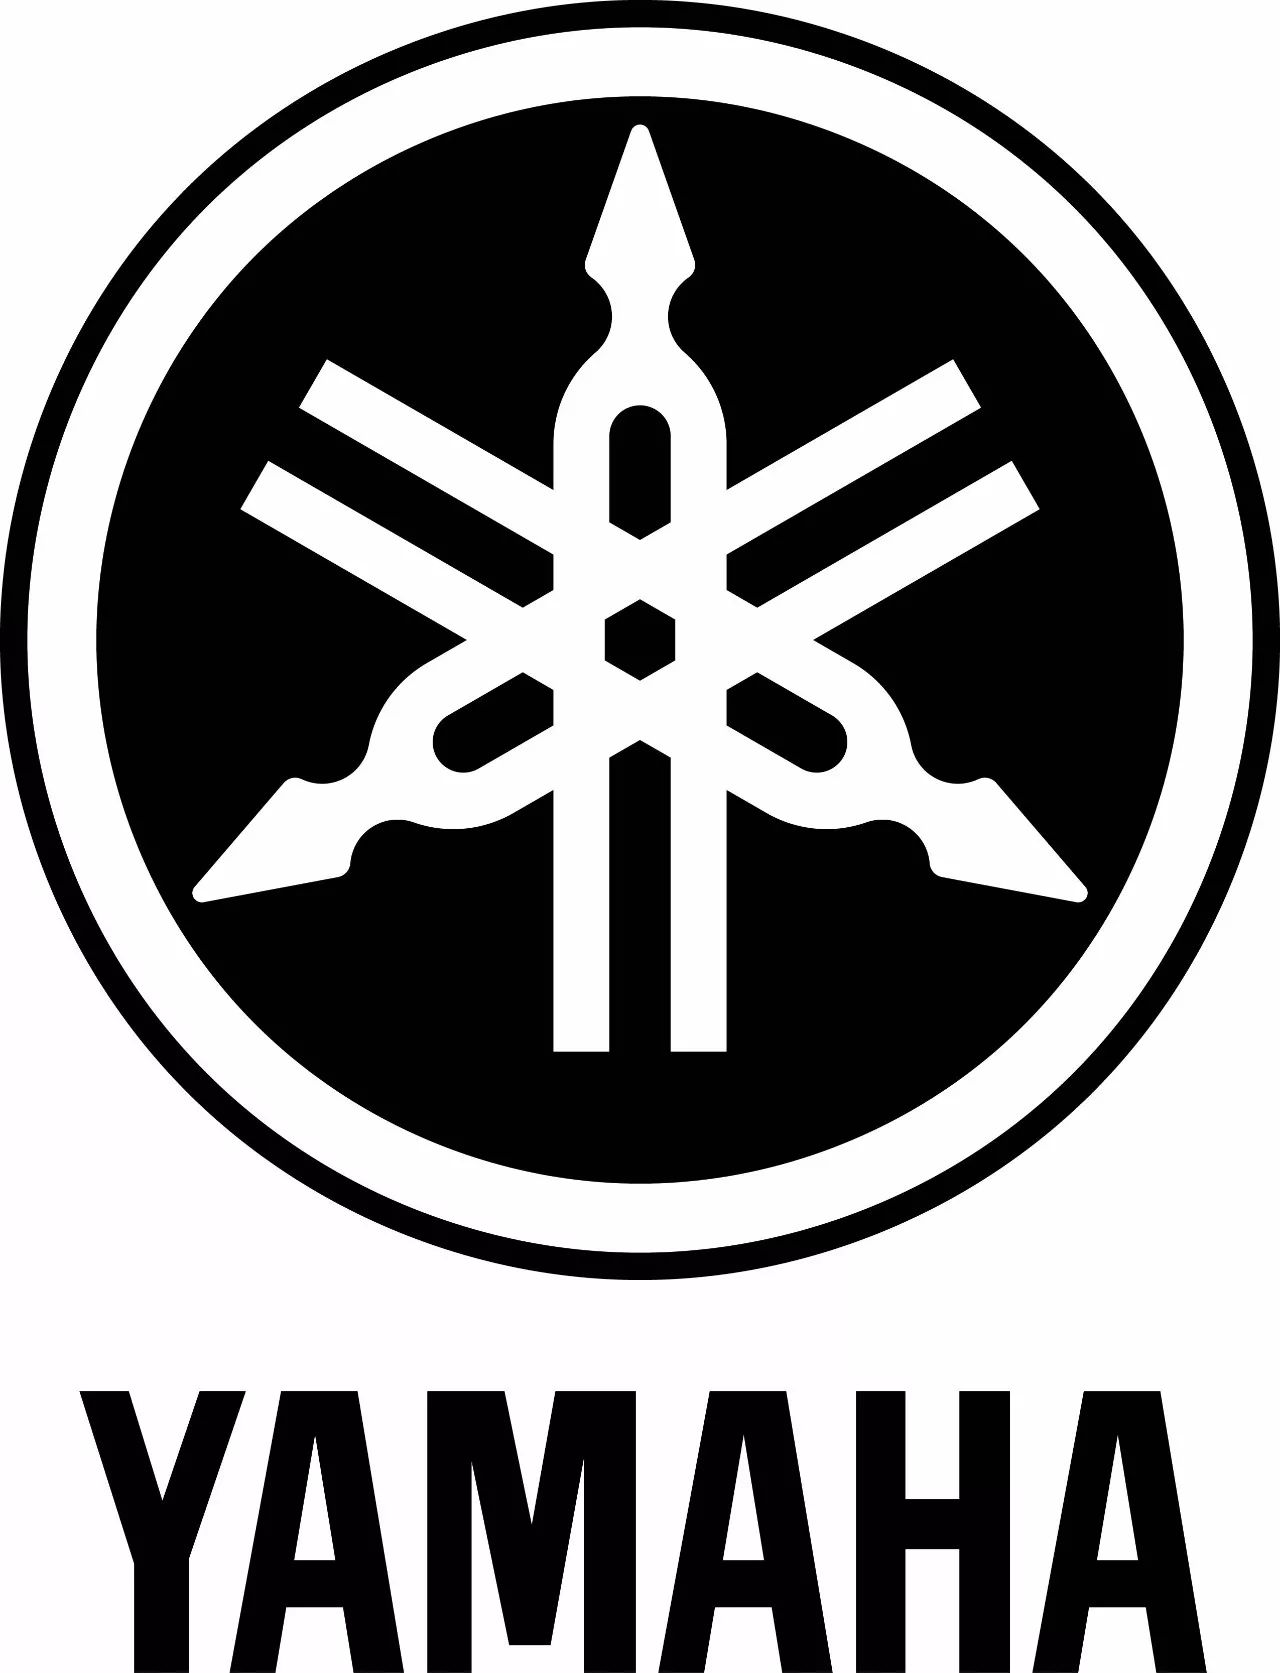 说起日本的大型制造企业 就不得不提到yamaha 都来自于 雅马哈(yamaha